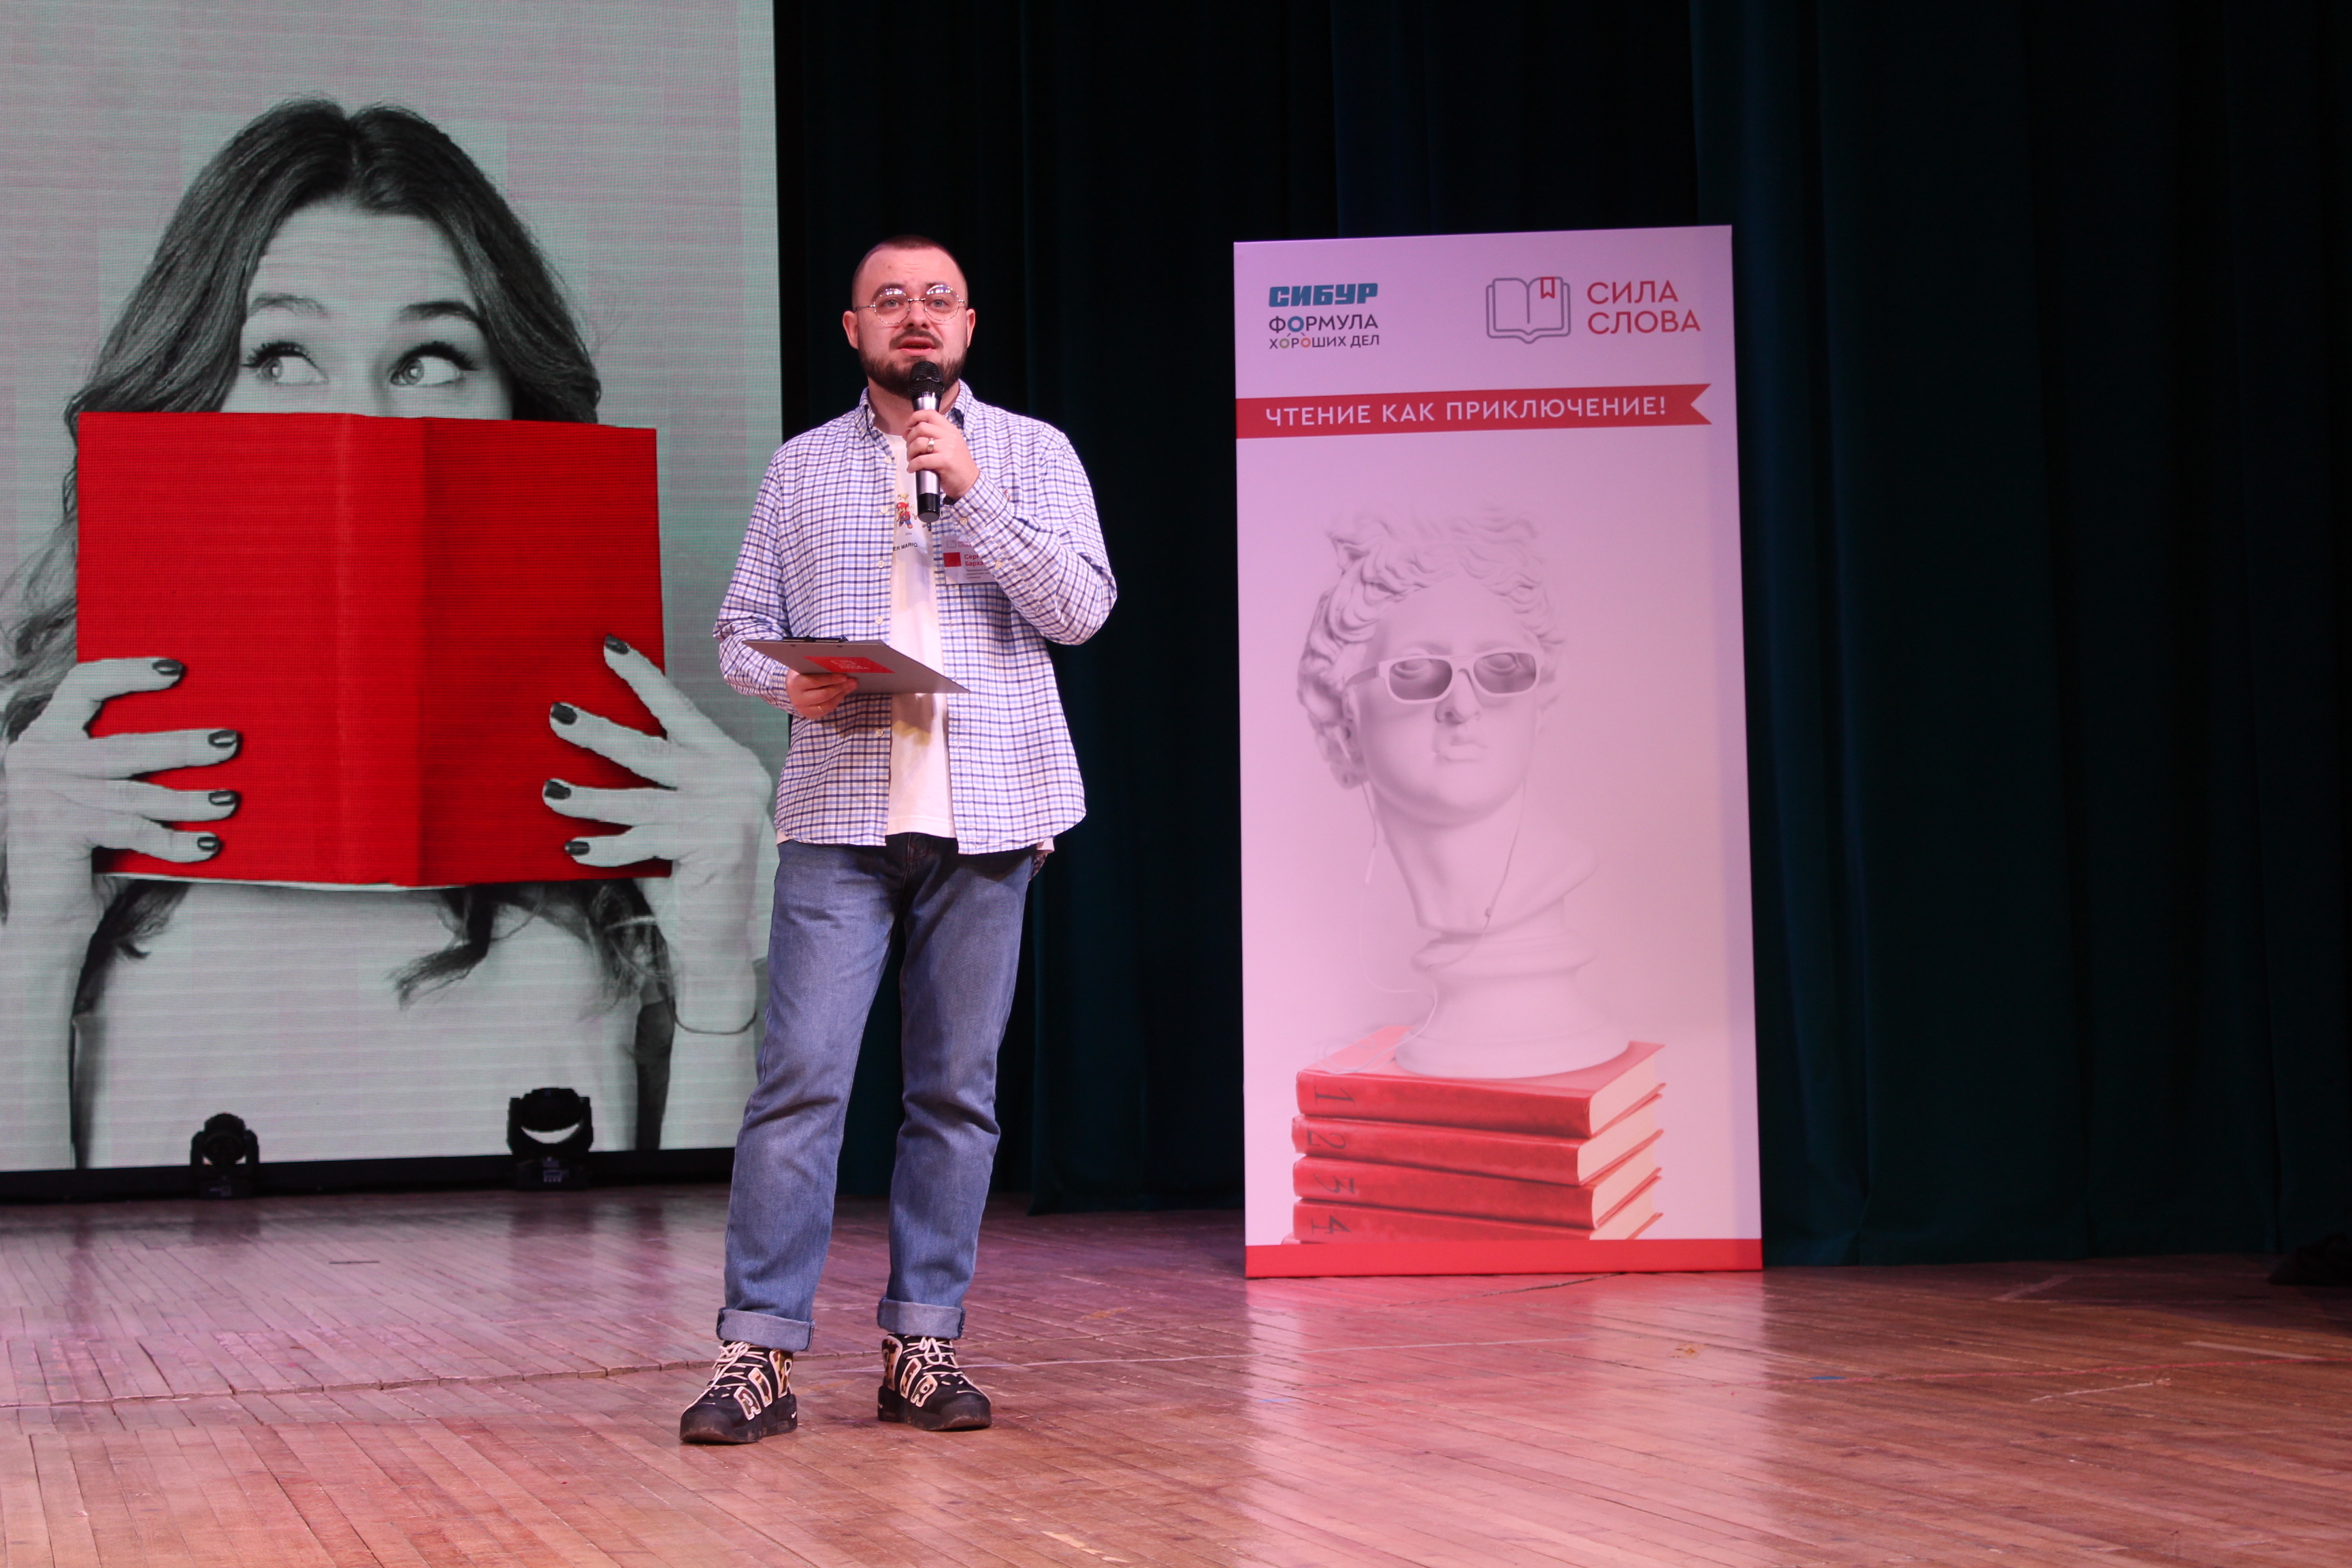 В Башкирию на семейный литературный фестиваль приехал известный российский писатель Денис Драгунский